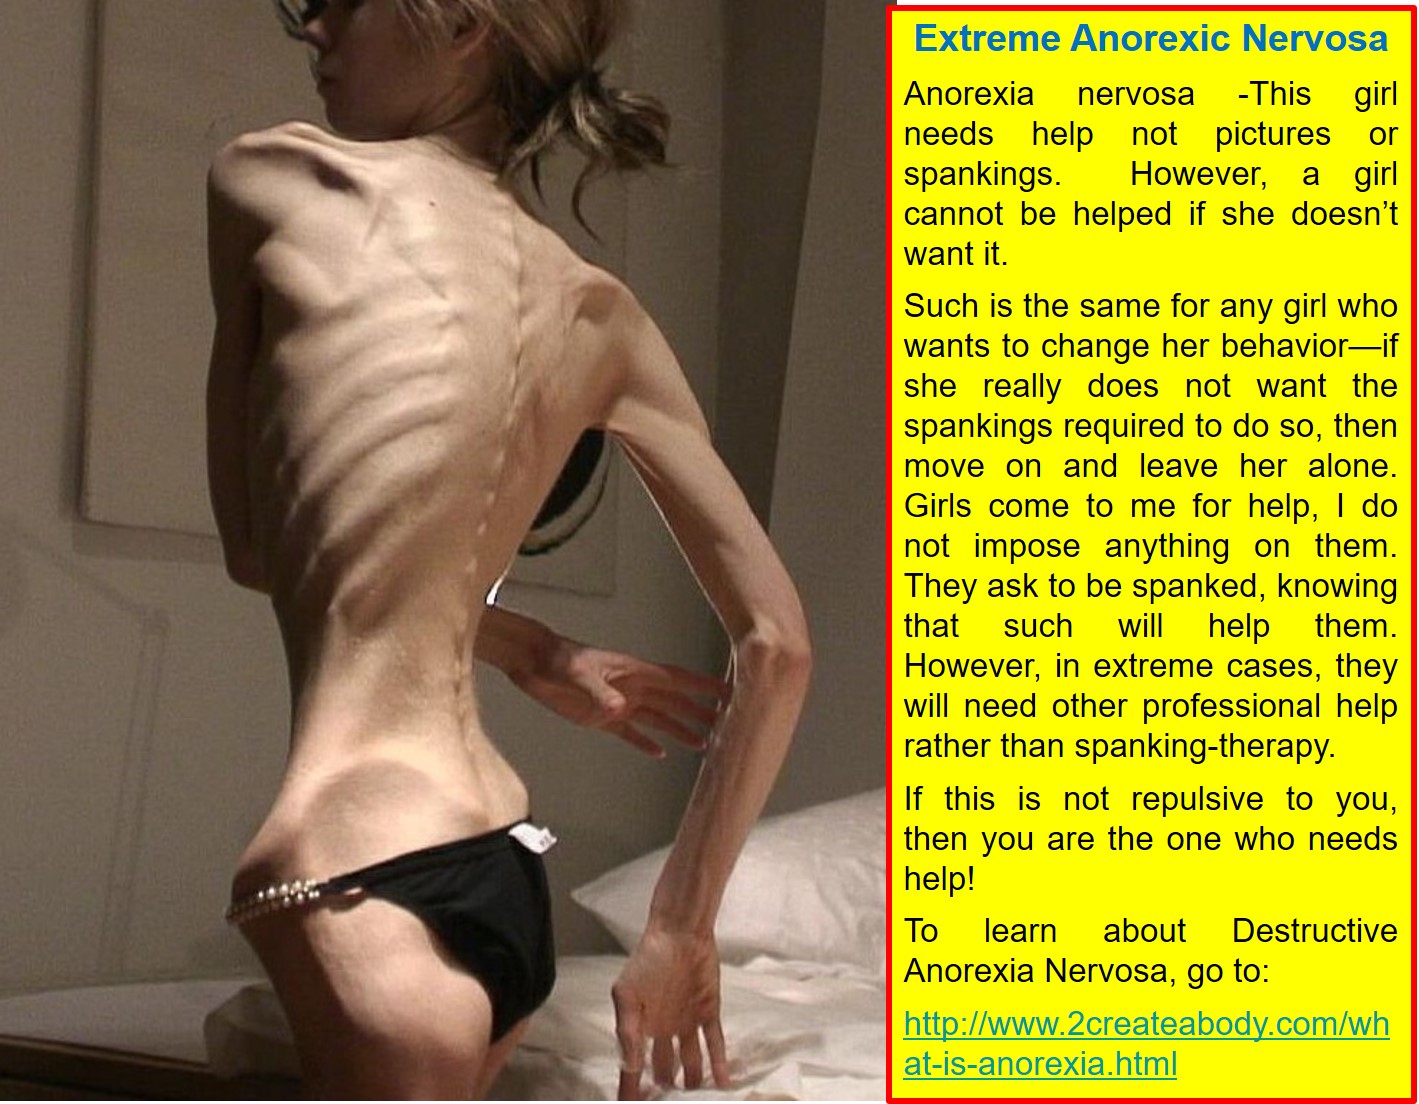 Is zendaya anorexic